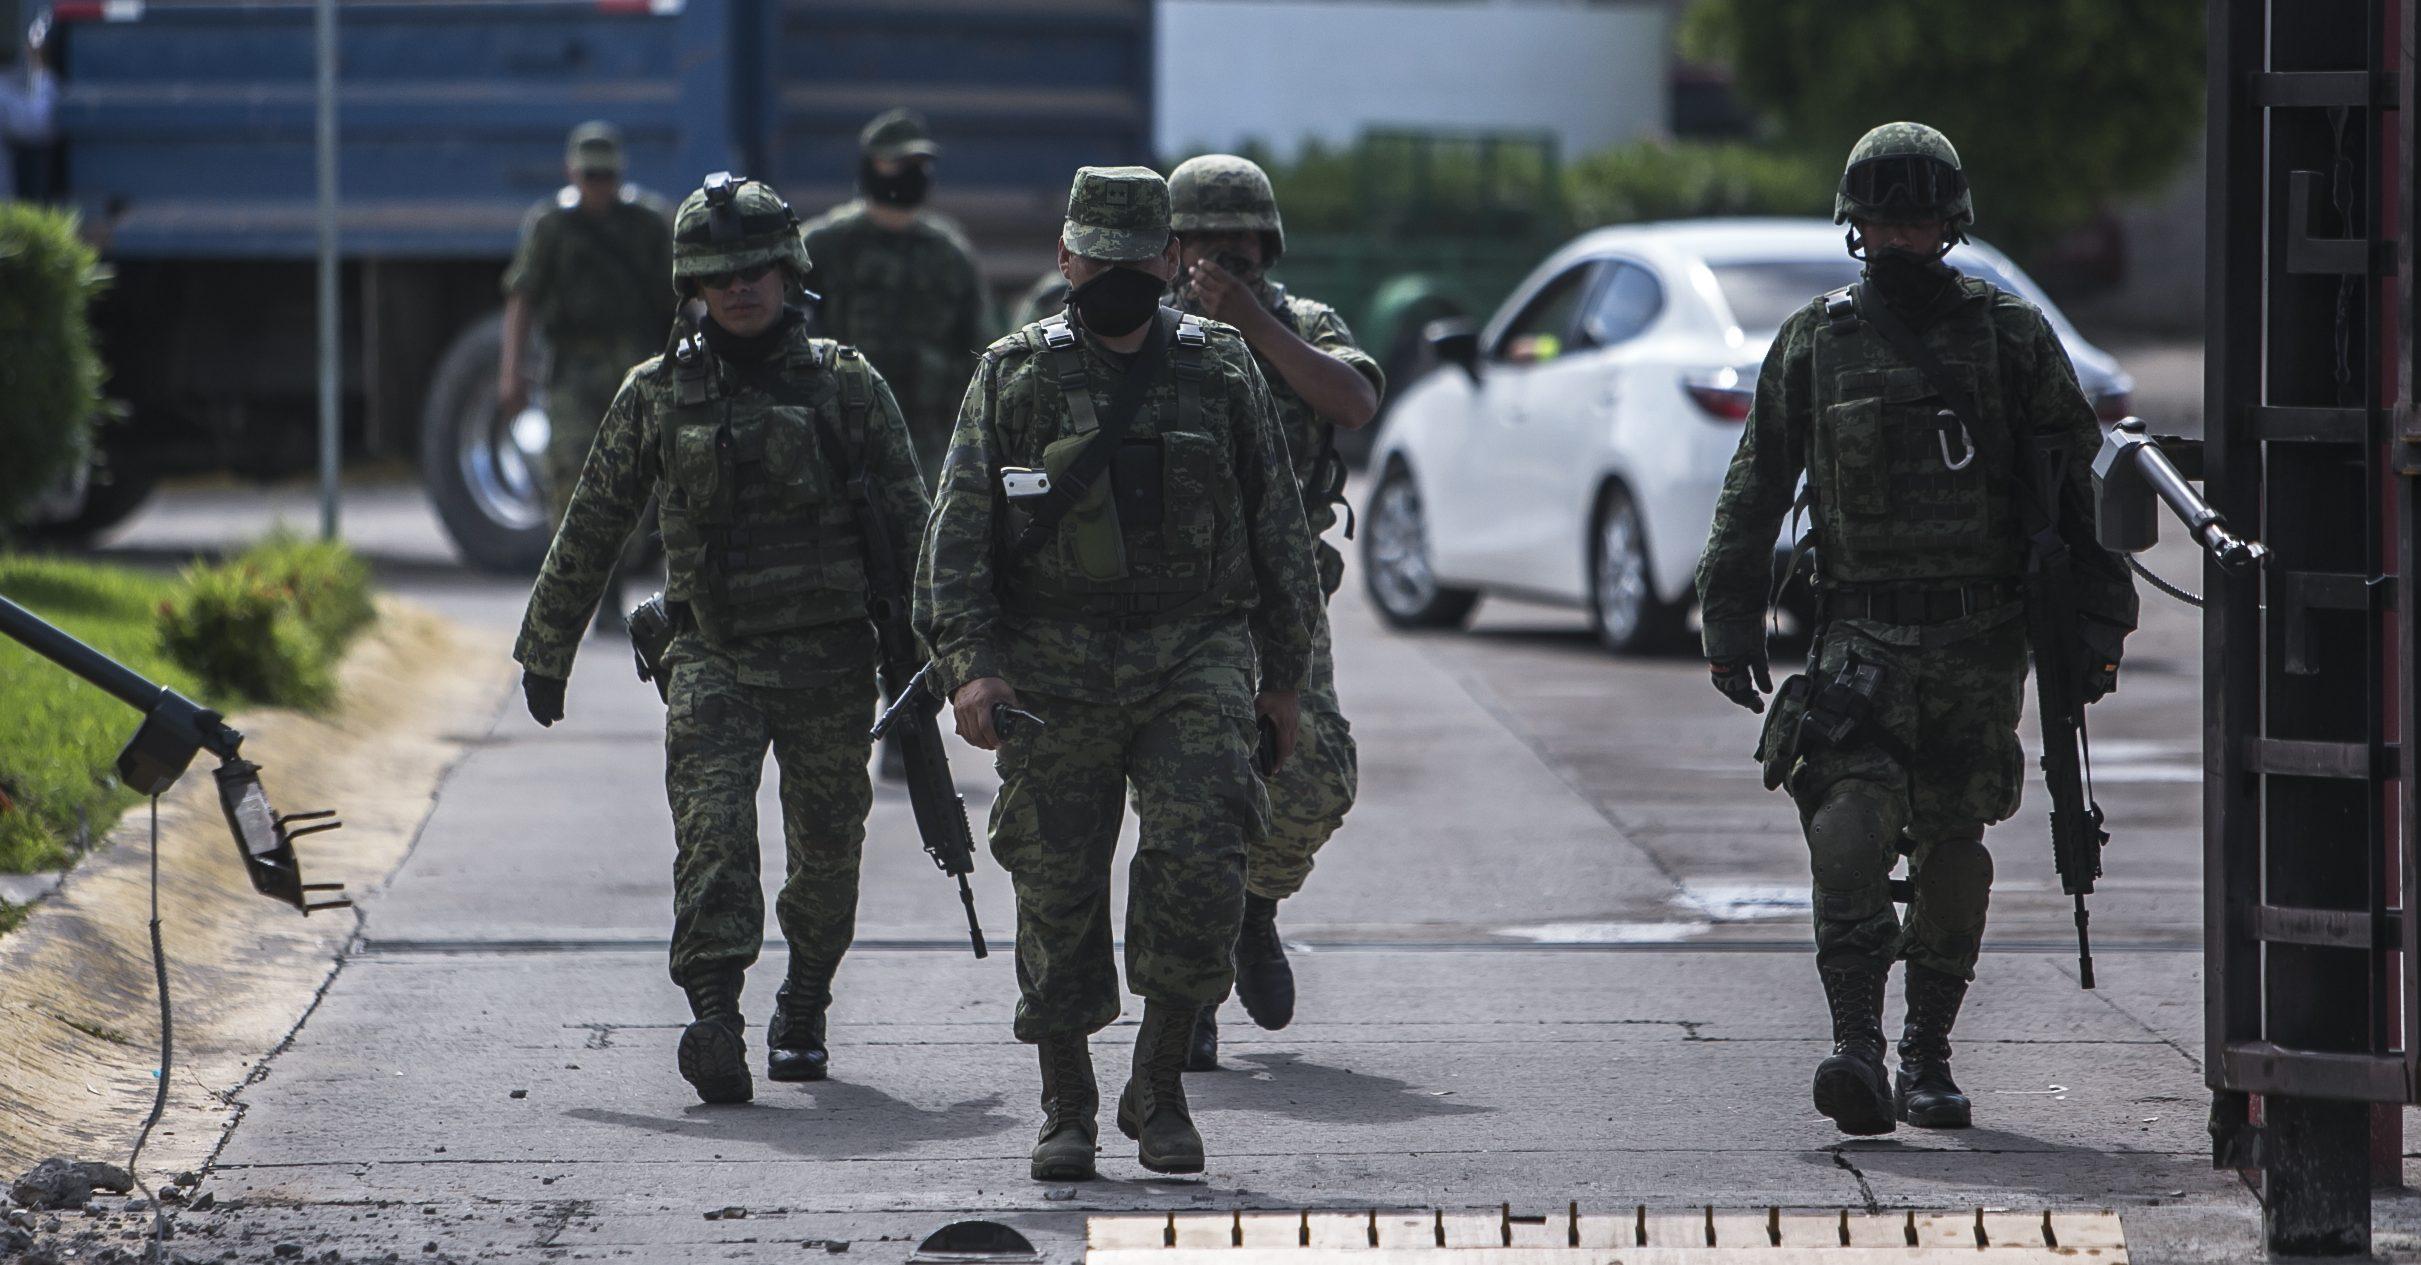 Gente cercana al Chapo Guzmán emboscó a militares en Sinaloa